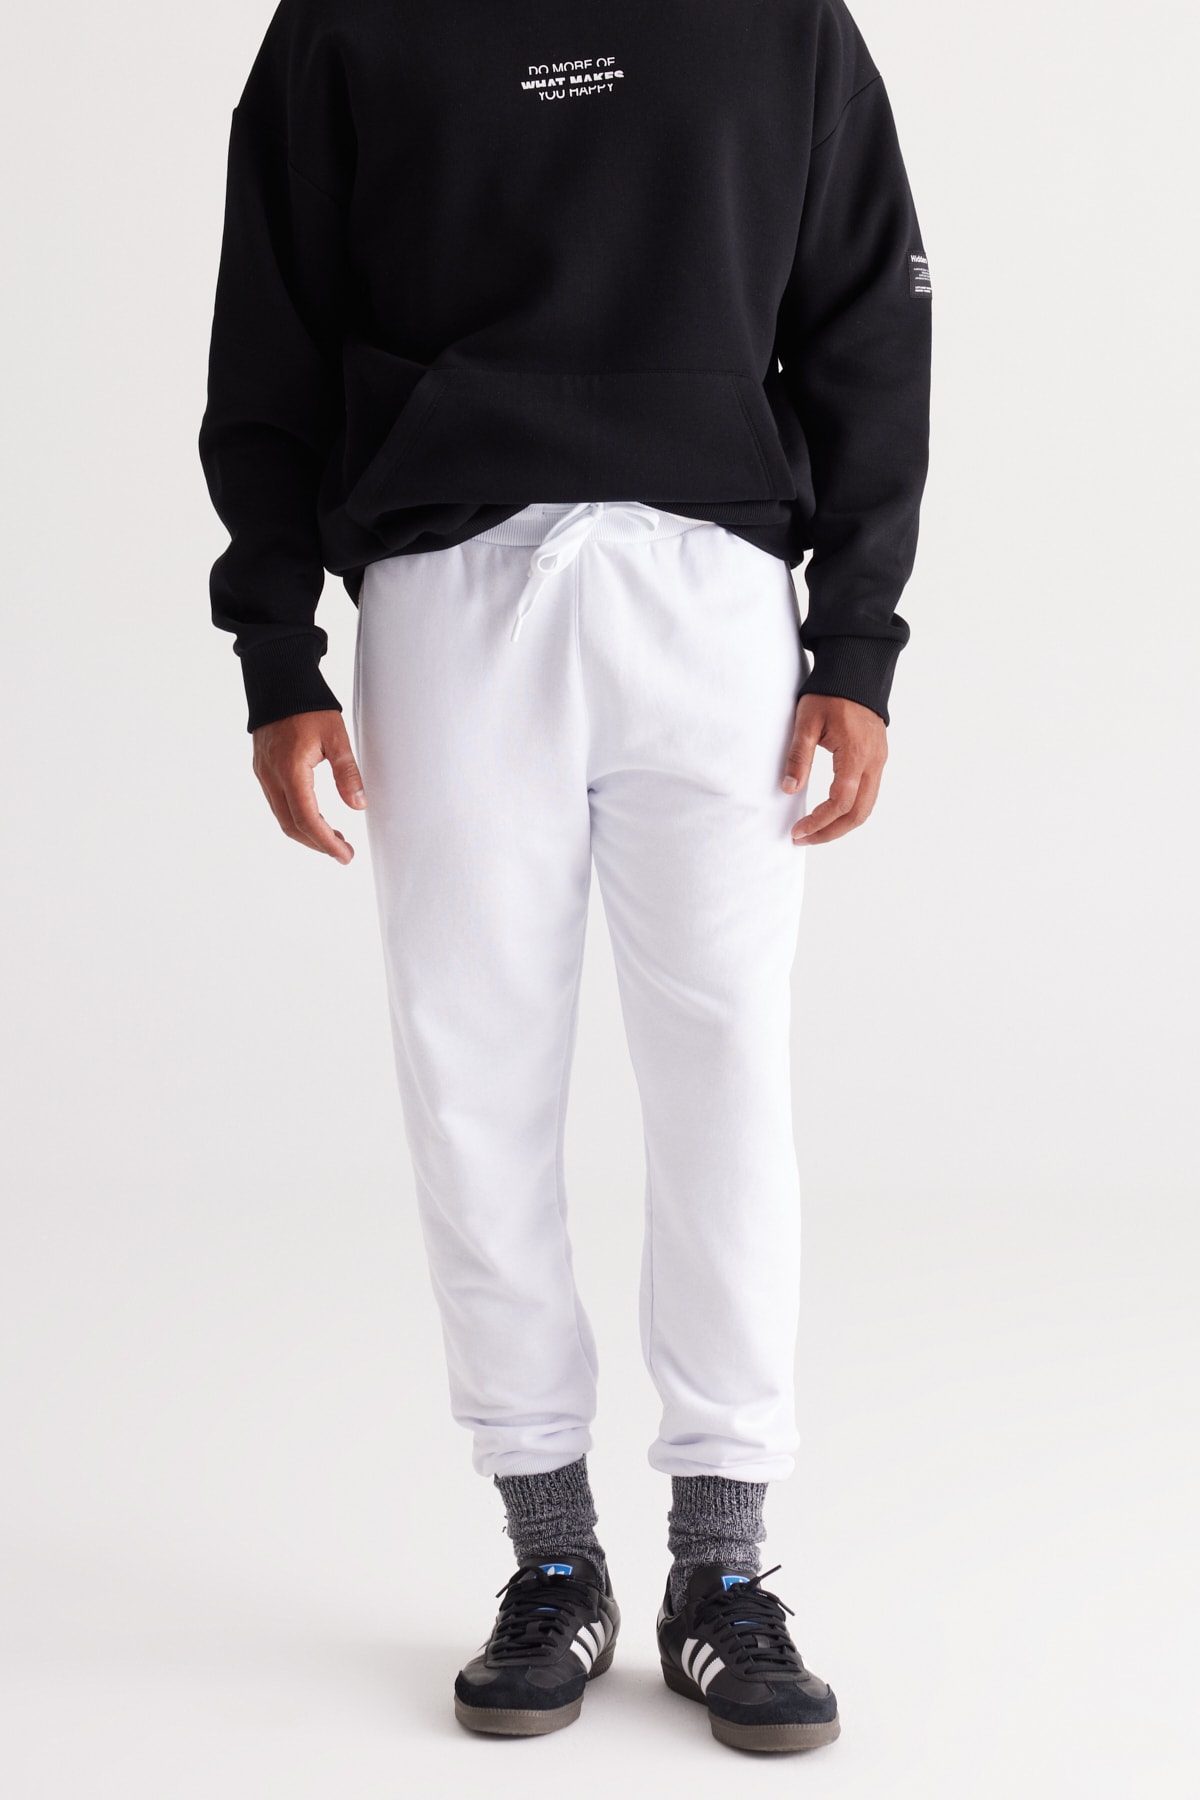 Levně AC&Co / Altınyıldız Classics Men's White Standard Fit Normal Cut Comfortable Cotton Sweatpants with Side Pockets.